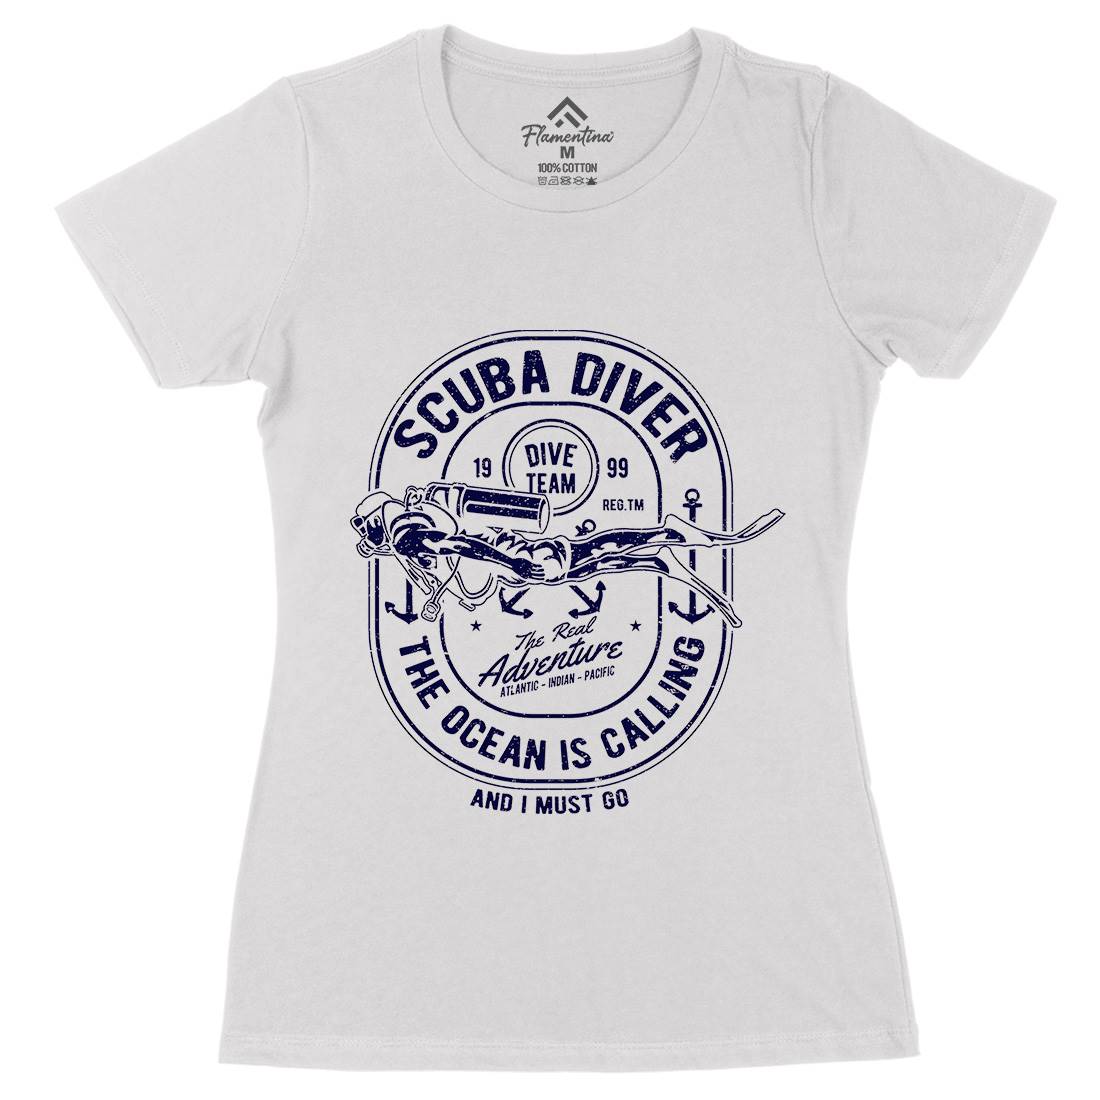 Scuba Diver Womens Organic Crew Neck T-Shirt Navy A138